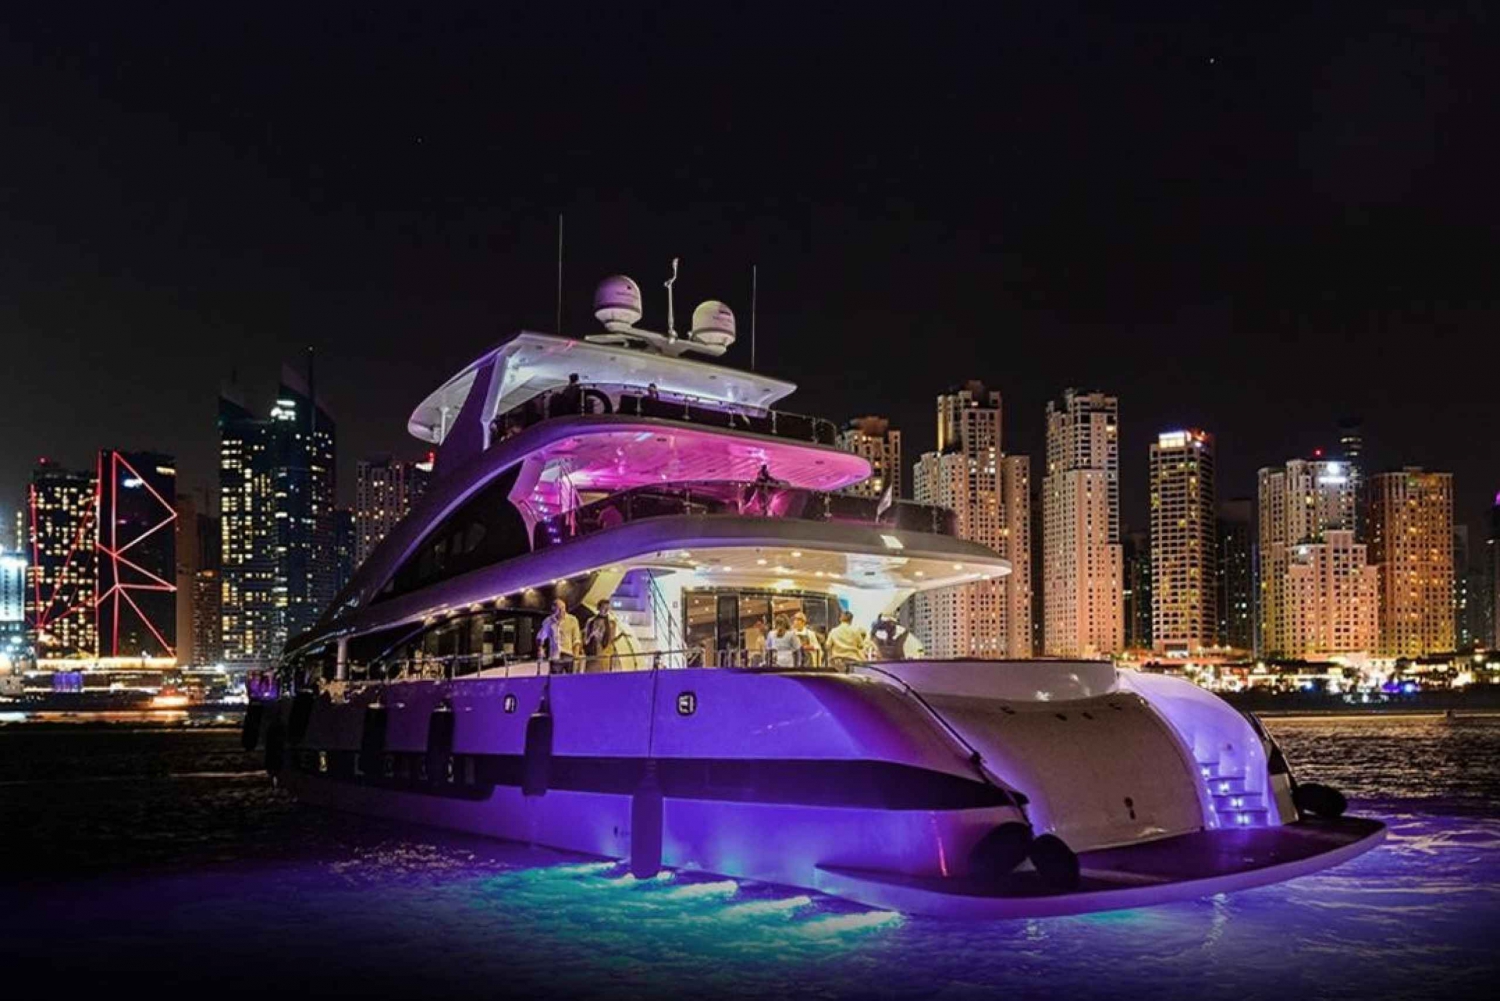 Dubaï : Expérience sur un superyacht avec fête et DJ en direct